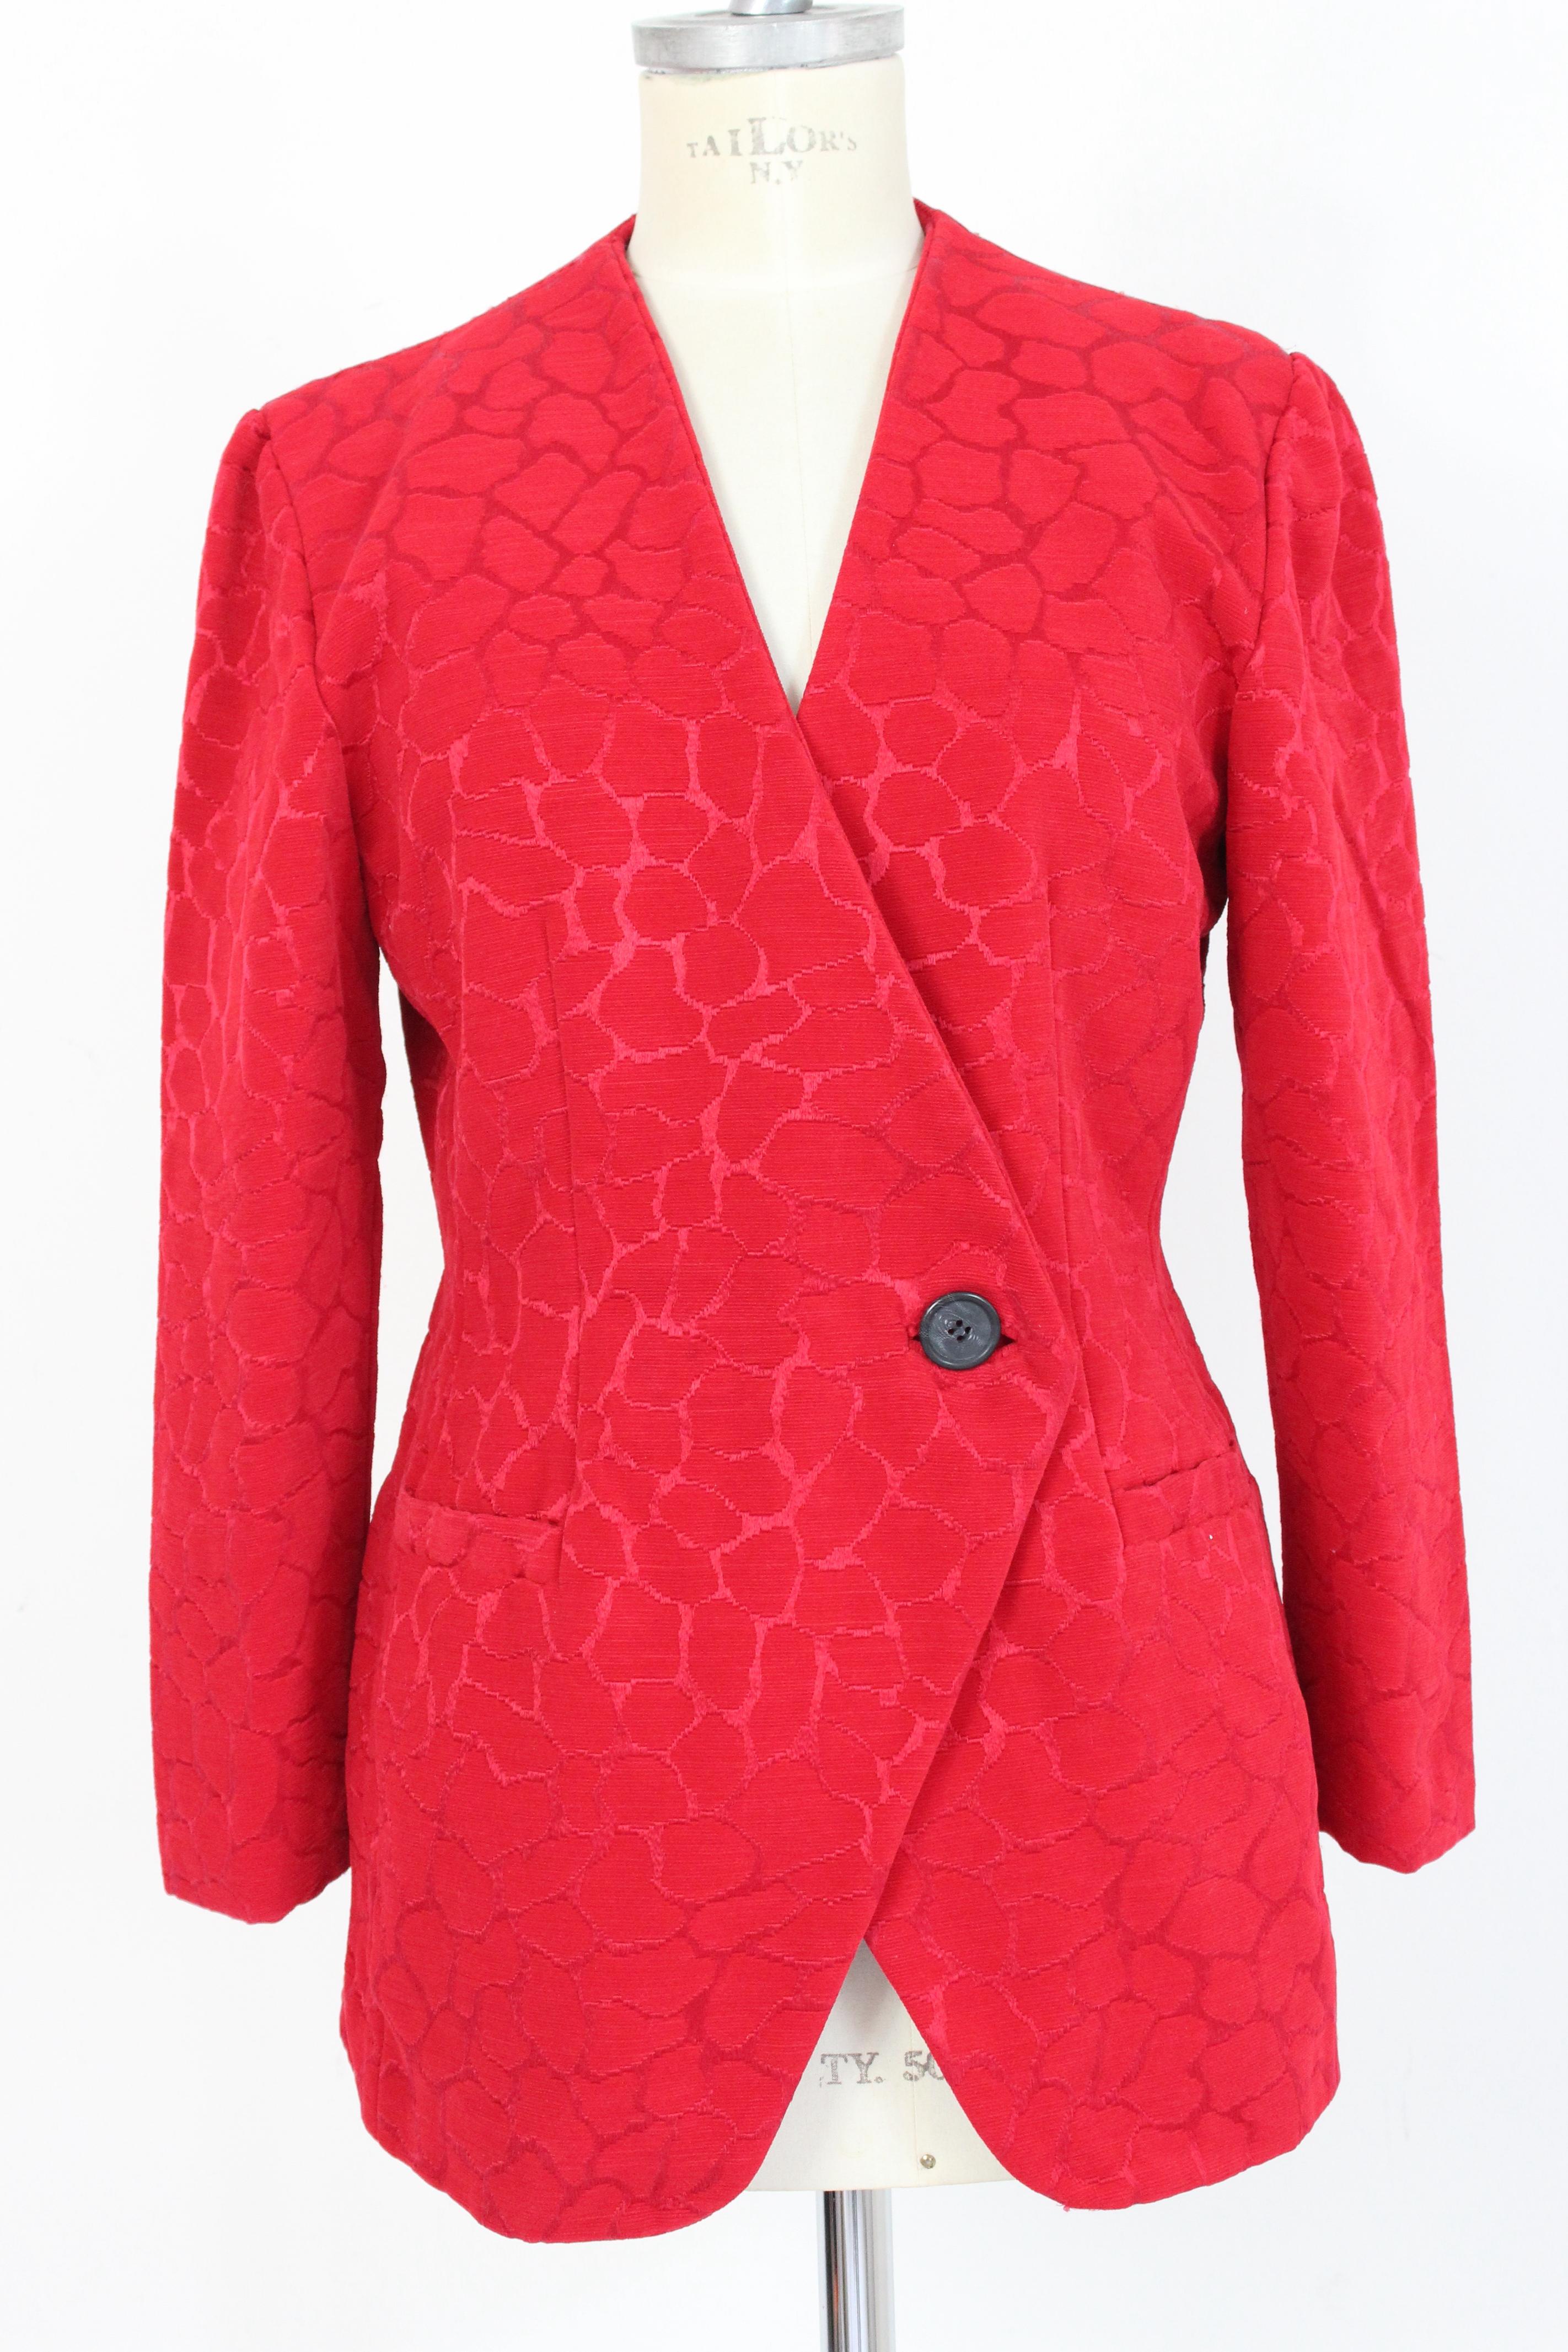 Gai Mattiolo Red Silk Damask Evening Skirt Suit 3